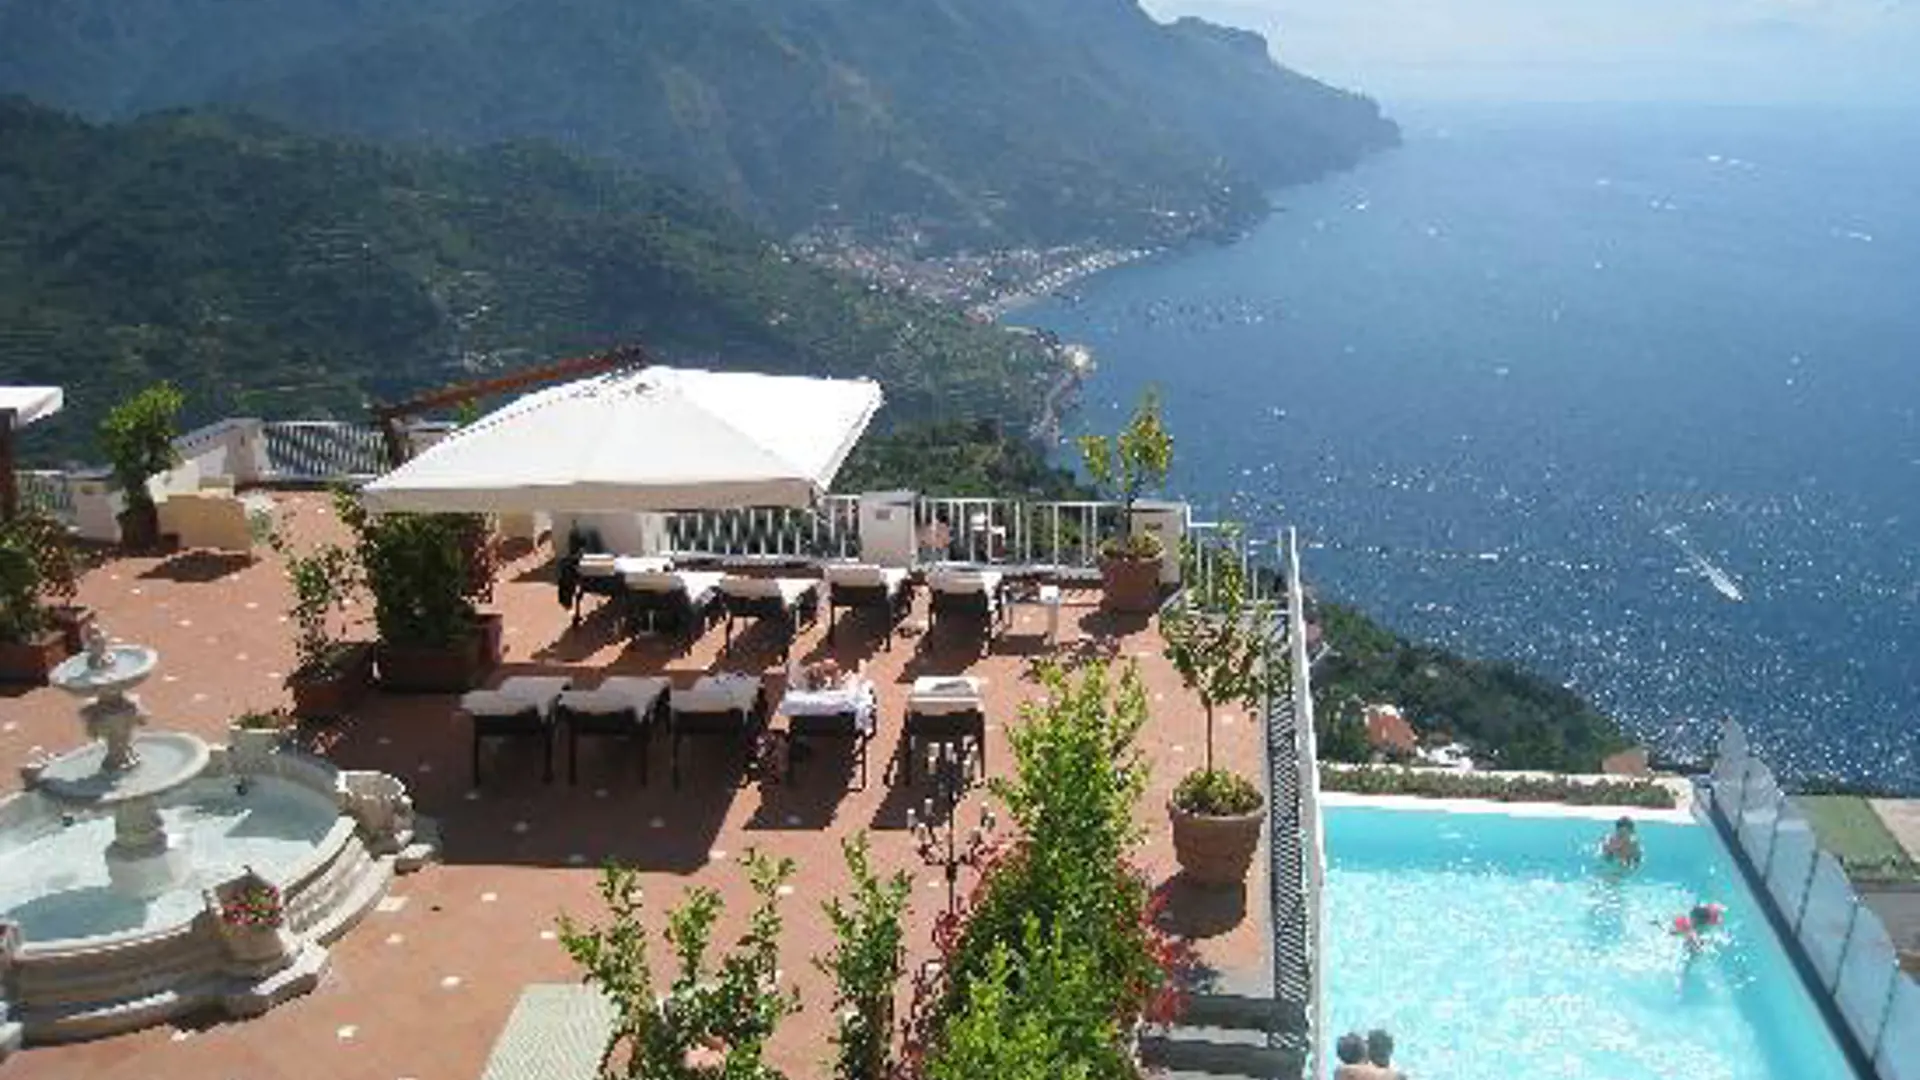 Hotel Villa Fraulo har en terrass och pool med en fantastisk utsikt